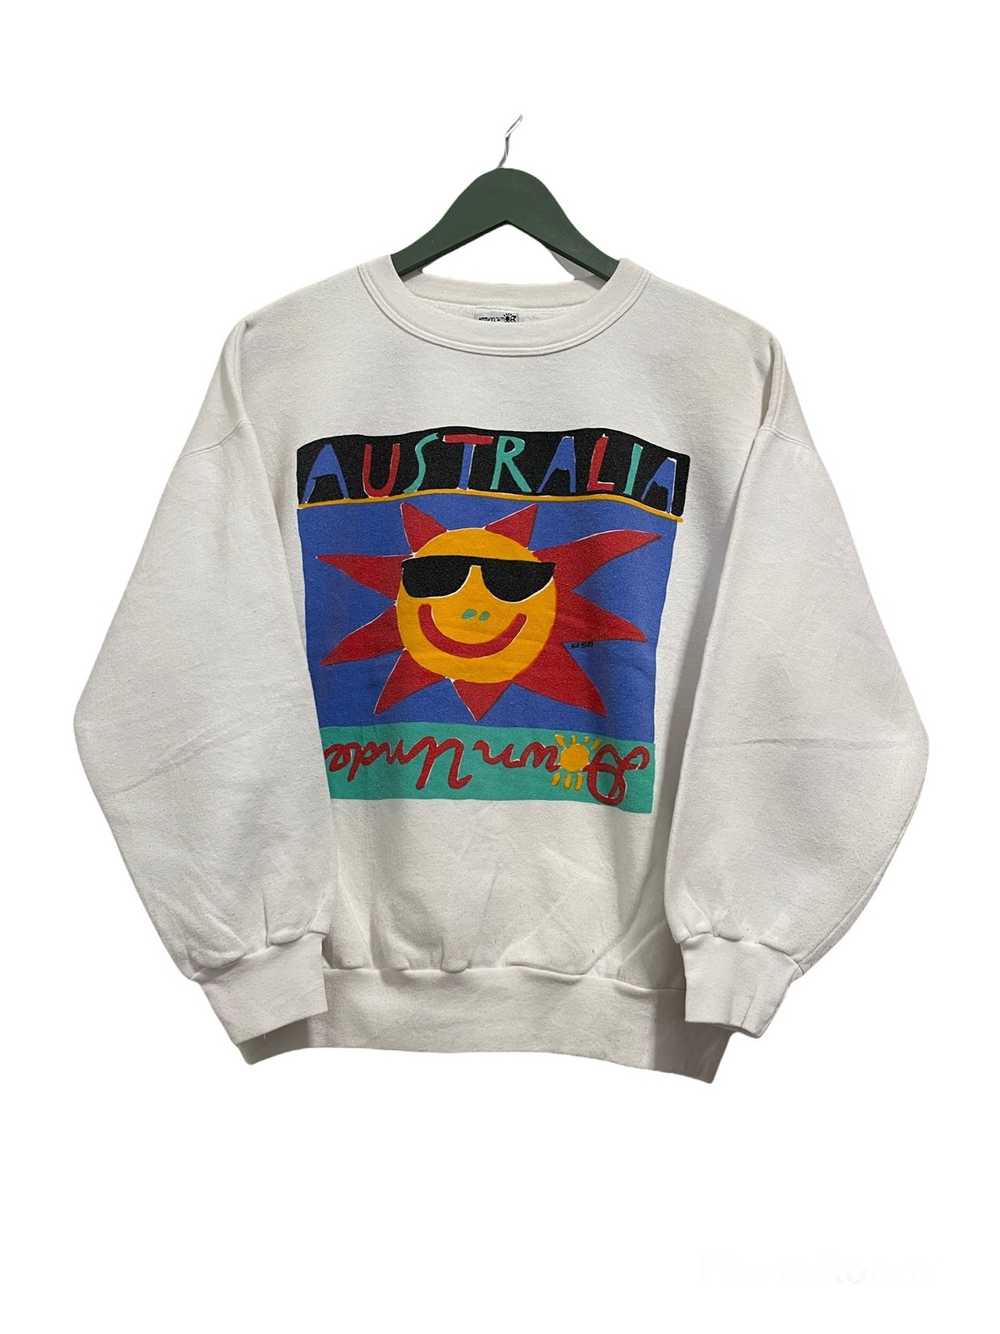 Japanese Brand × Vintage Vintage 1989 Australia G… - image 1